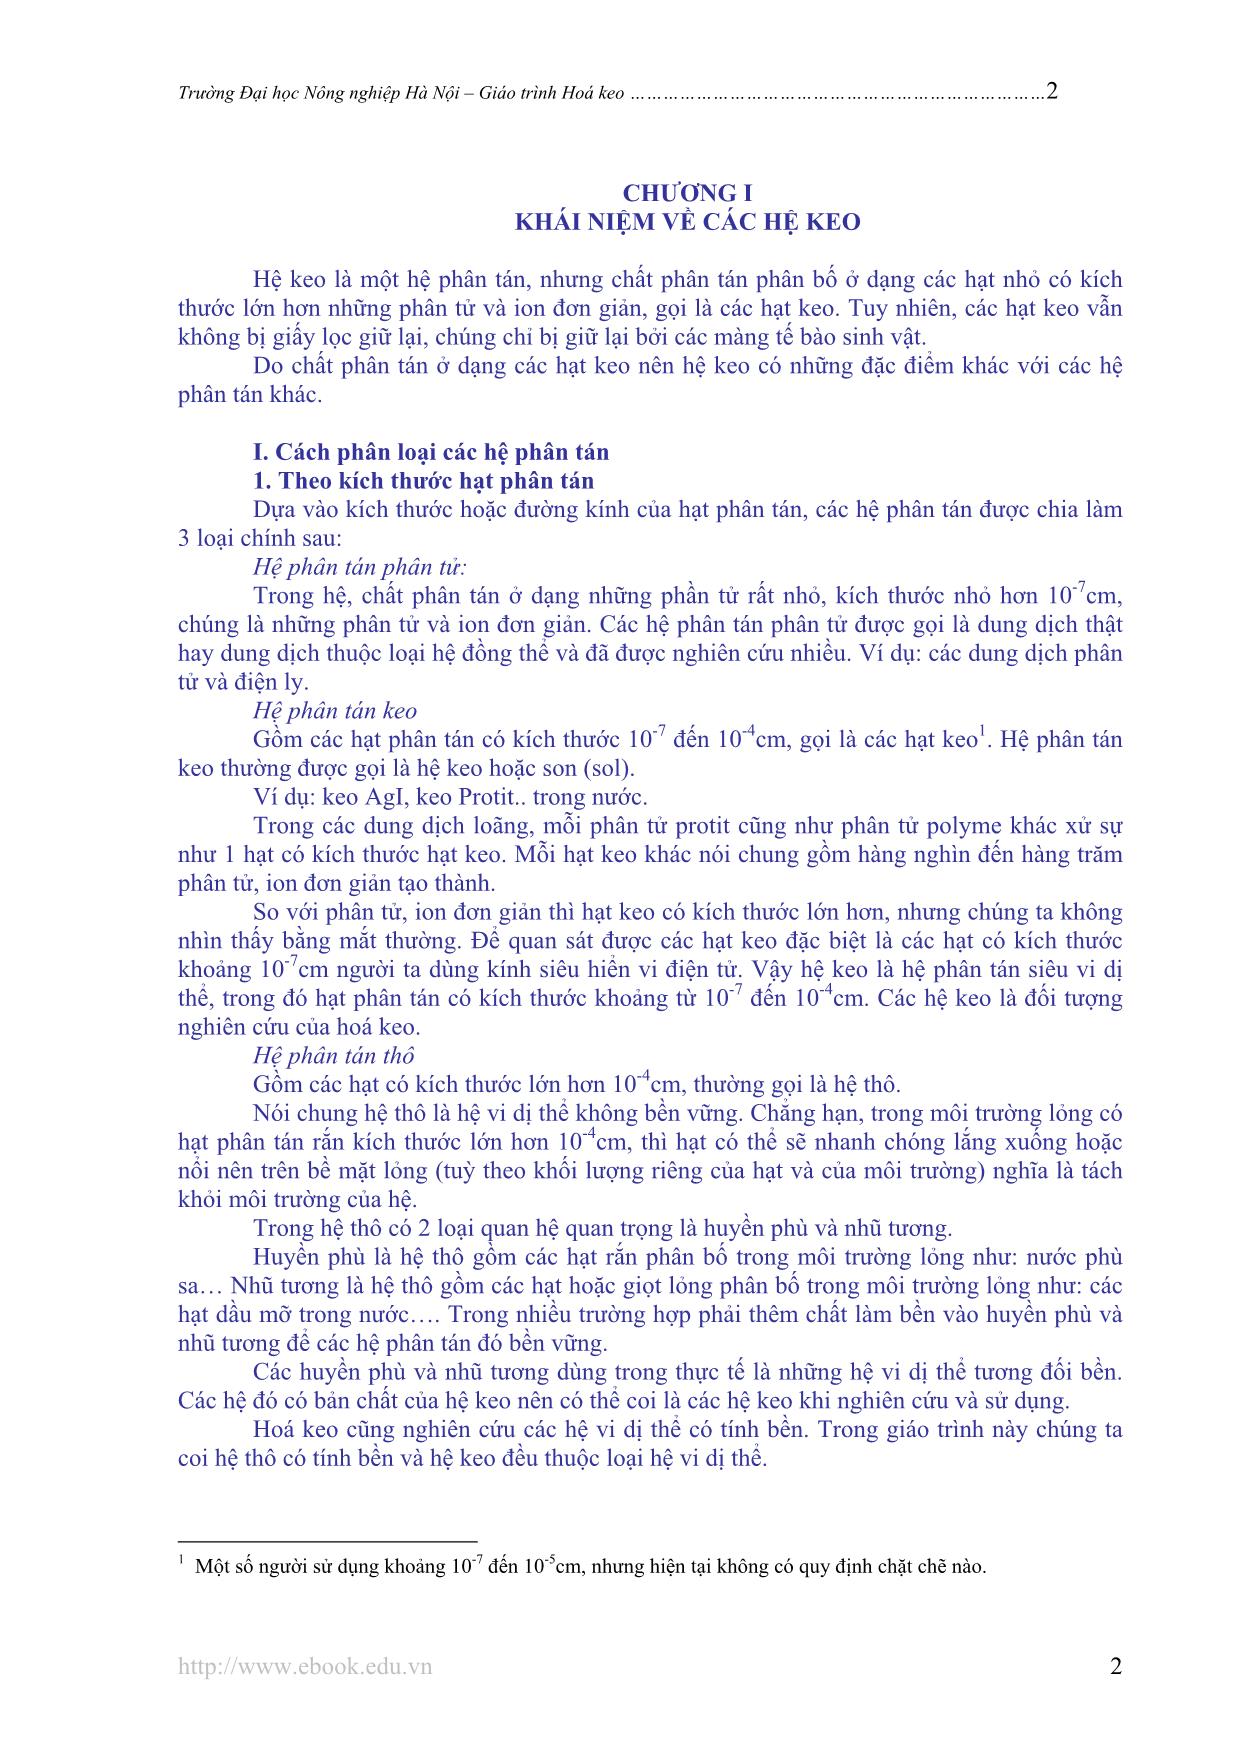 Giáo trình Hóa keo trang 3